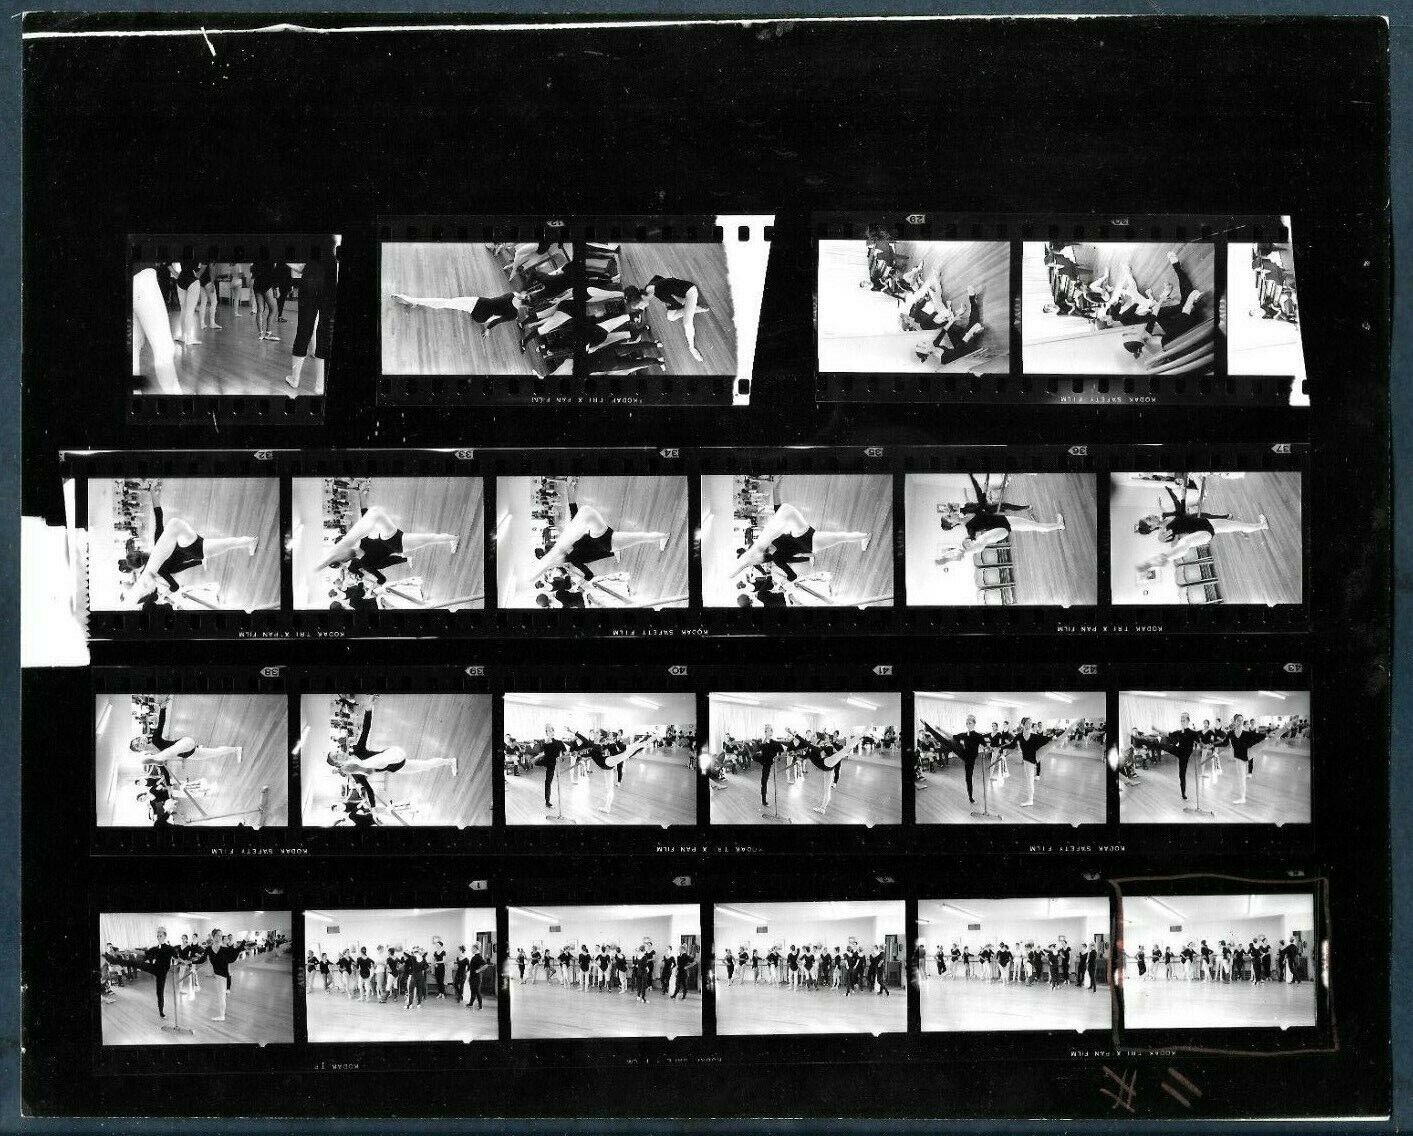 EXCLUSIVE MIAMI BALLET SEQUENCE SHOTS ALBERT COYA MIAMI 1967 VINTAGE Photo Y 202